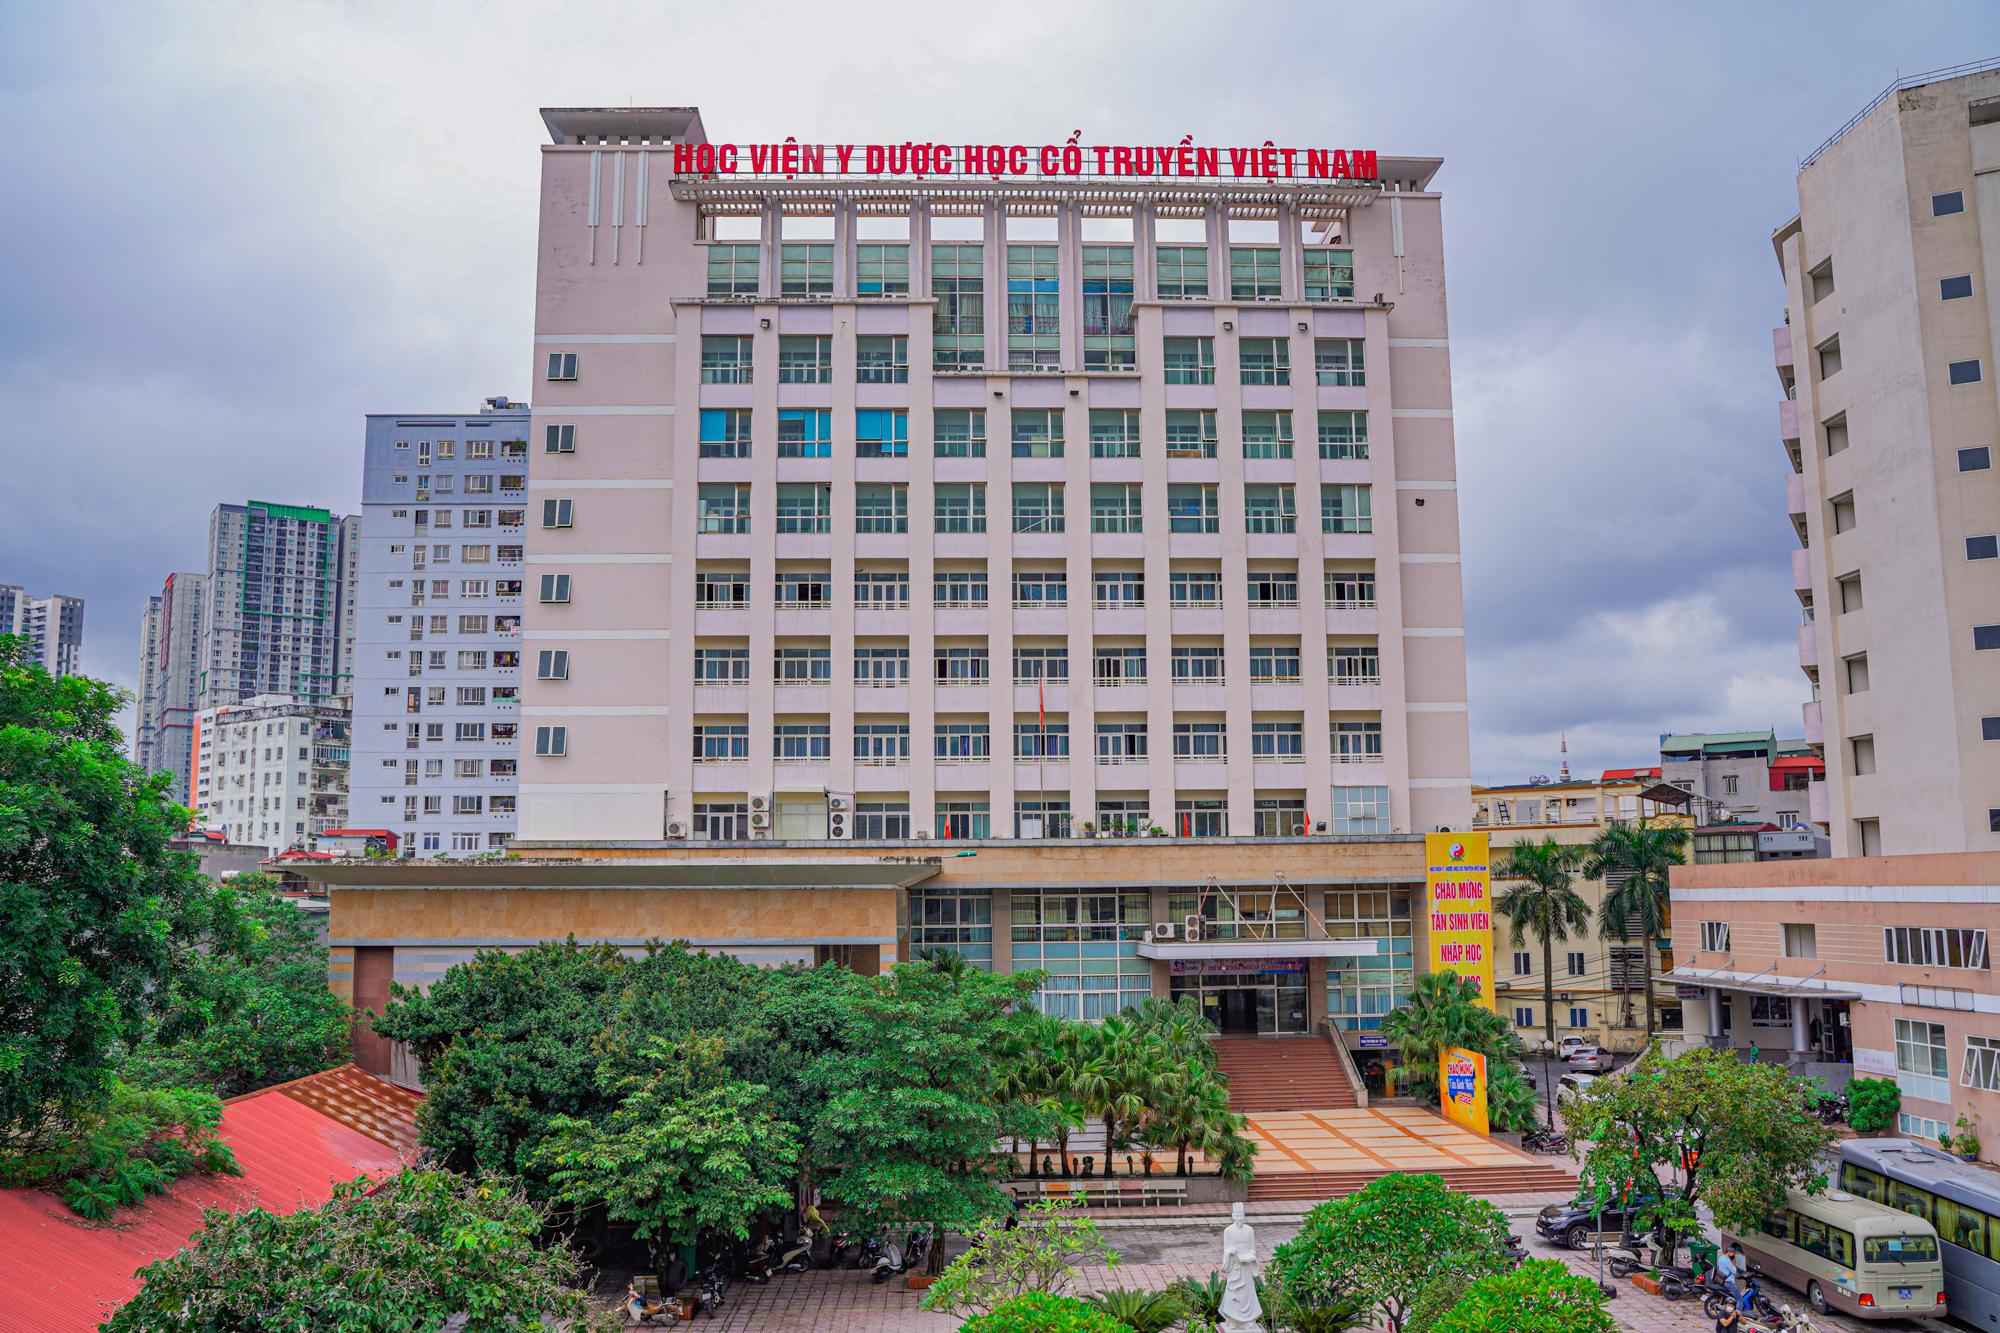 Đoạn đường 2,8 km ở Hà Nội có 7 trường đại học - Ảnh 6.